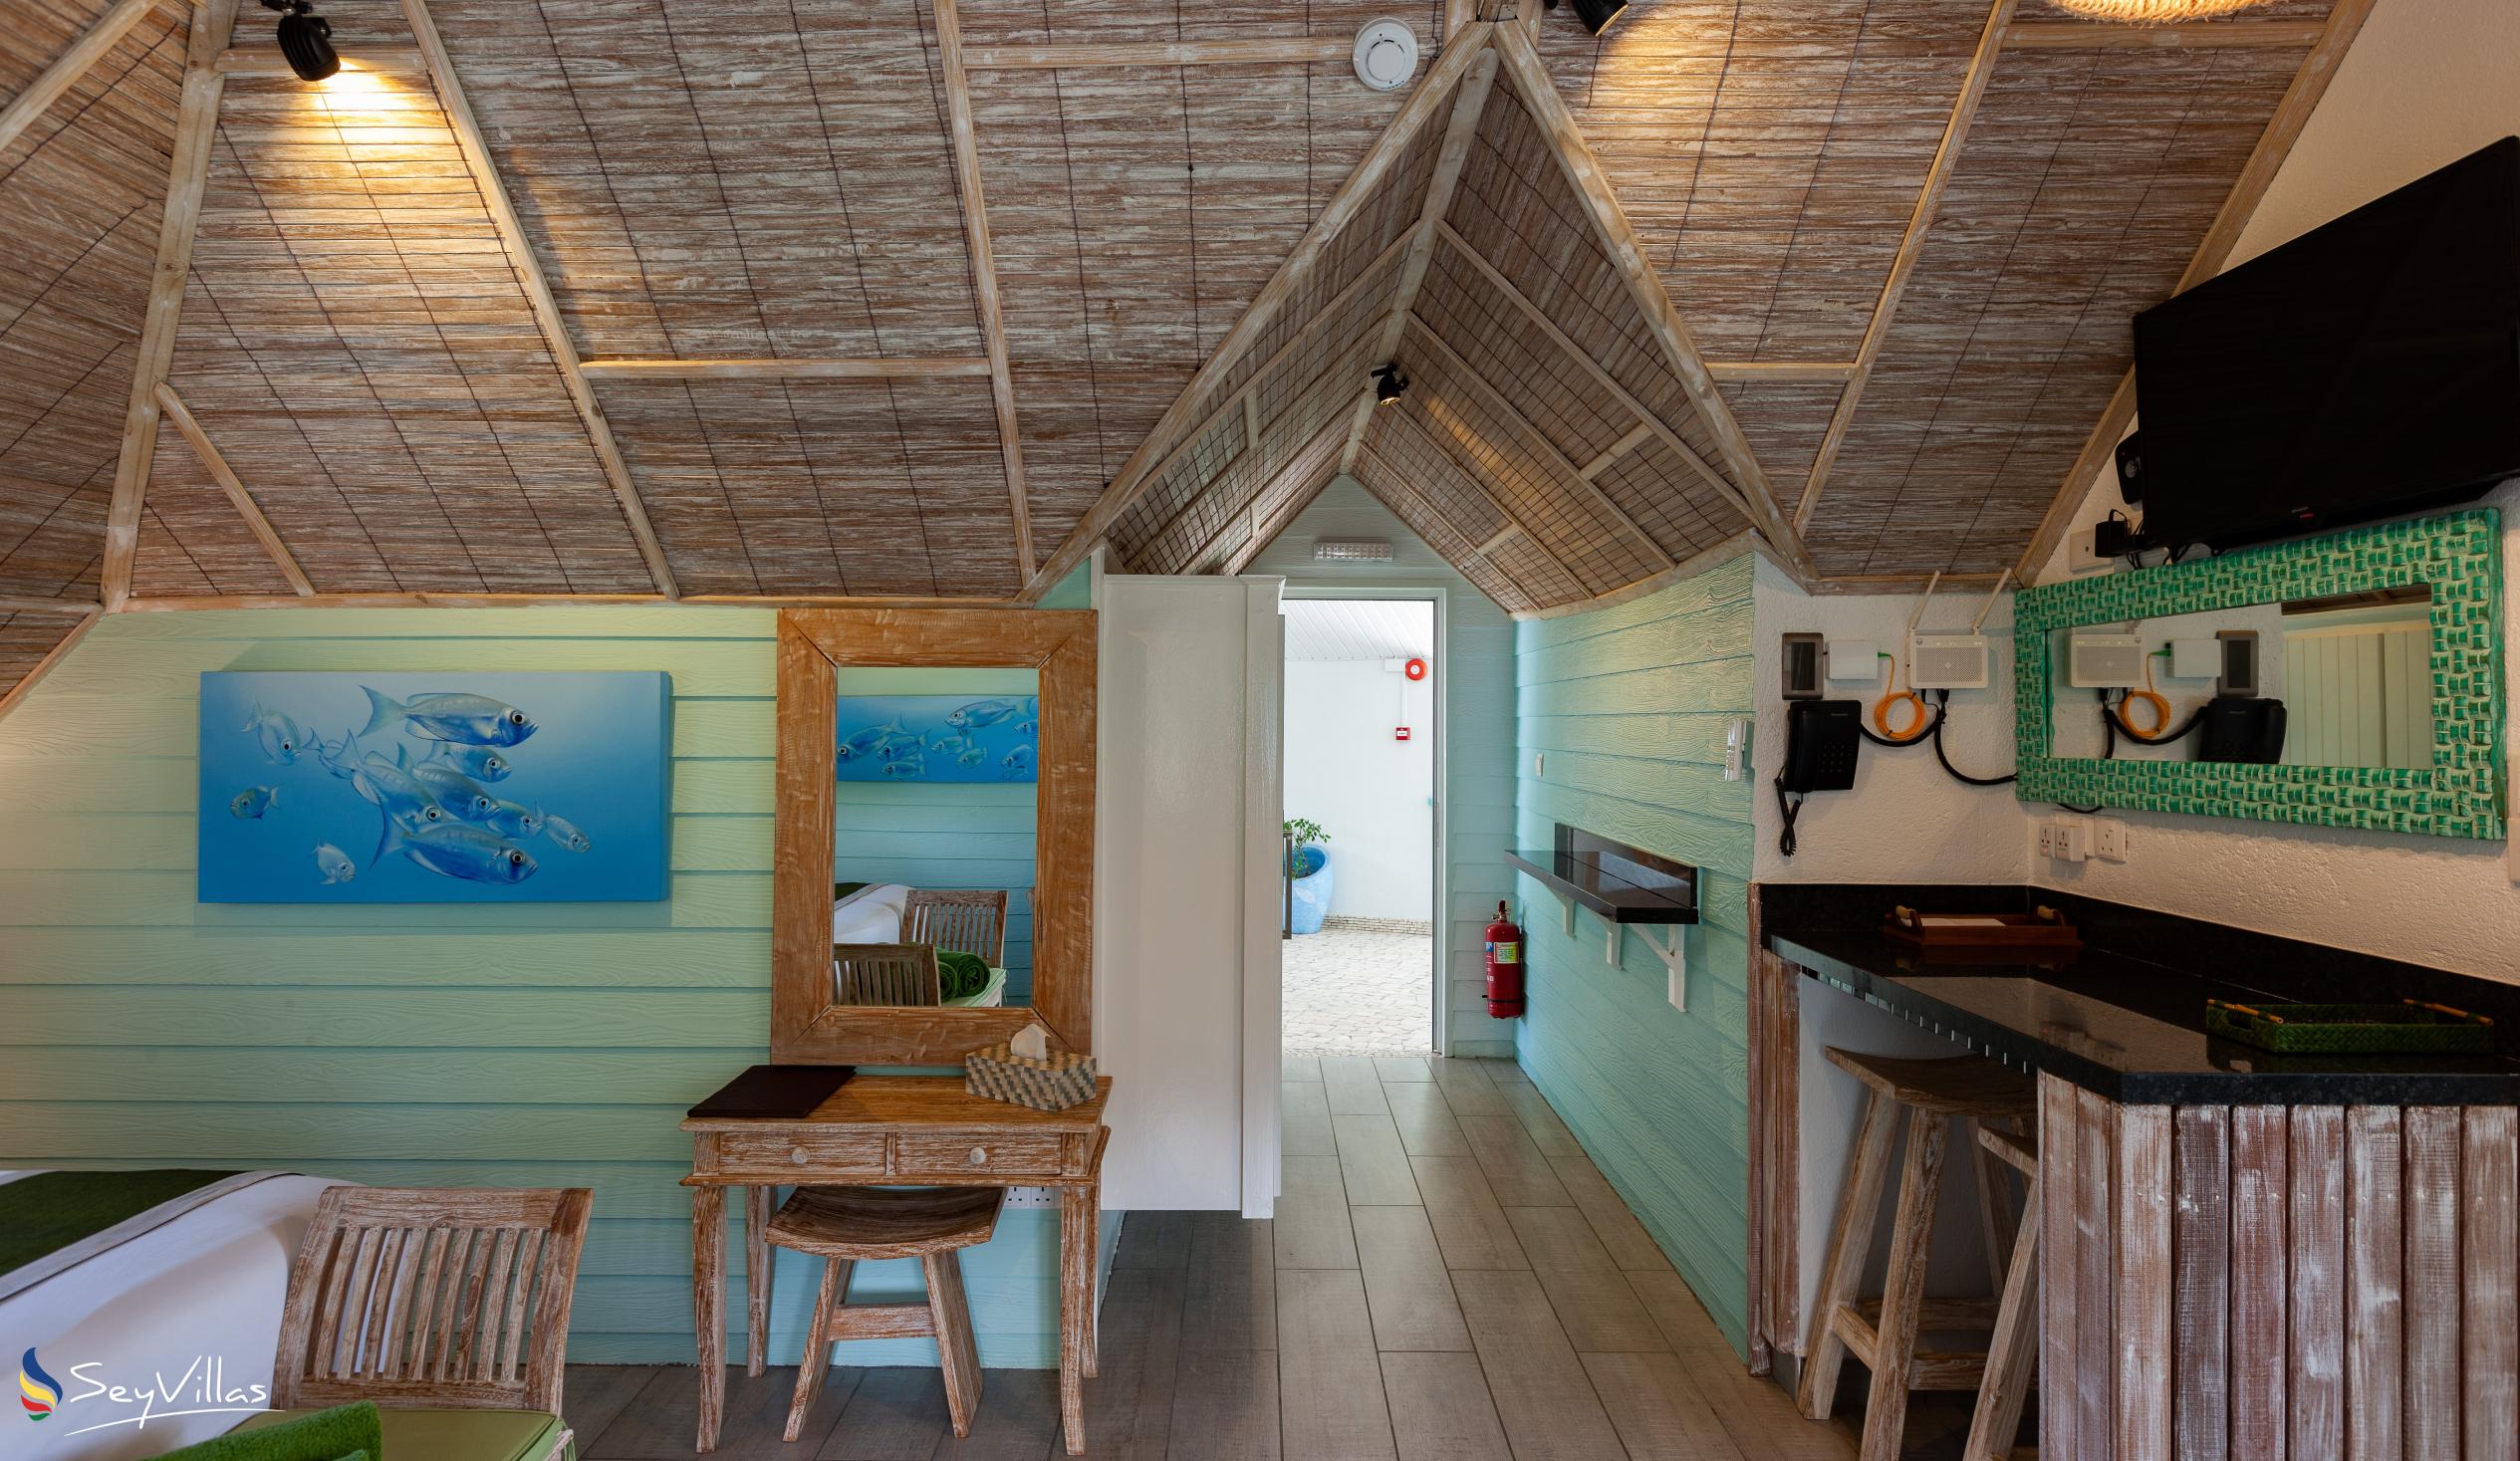 Photo 69: La Digue Self Catering - Loft Studio Apartment - La Digue (Seychelles)